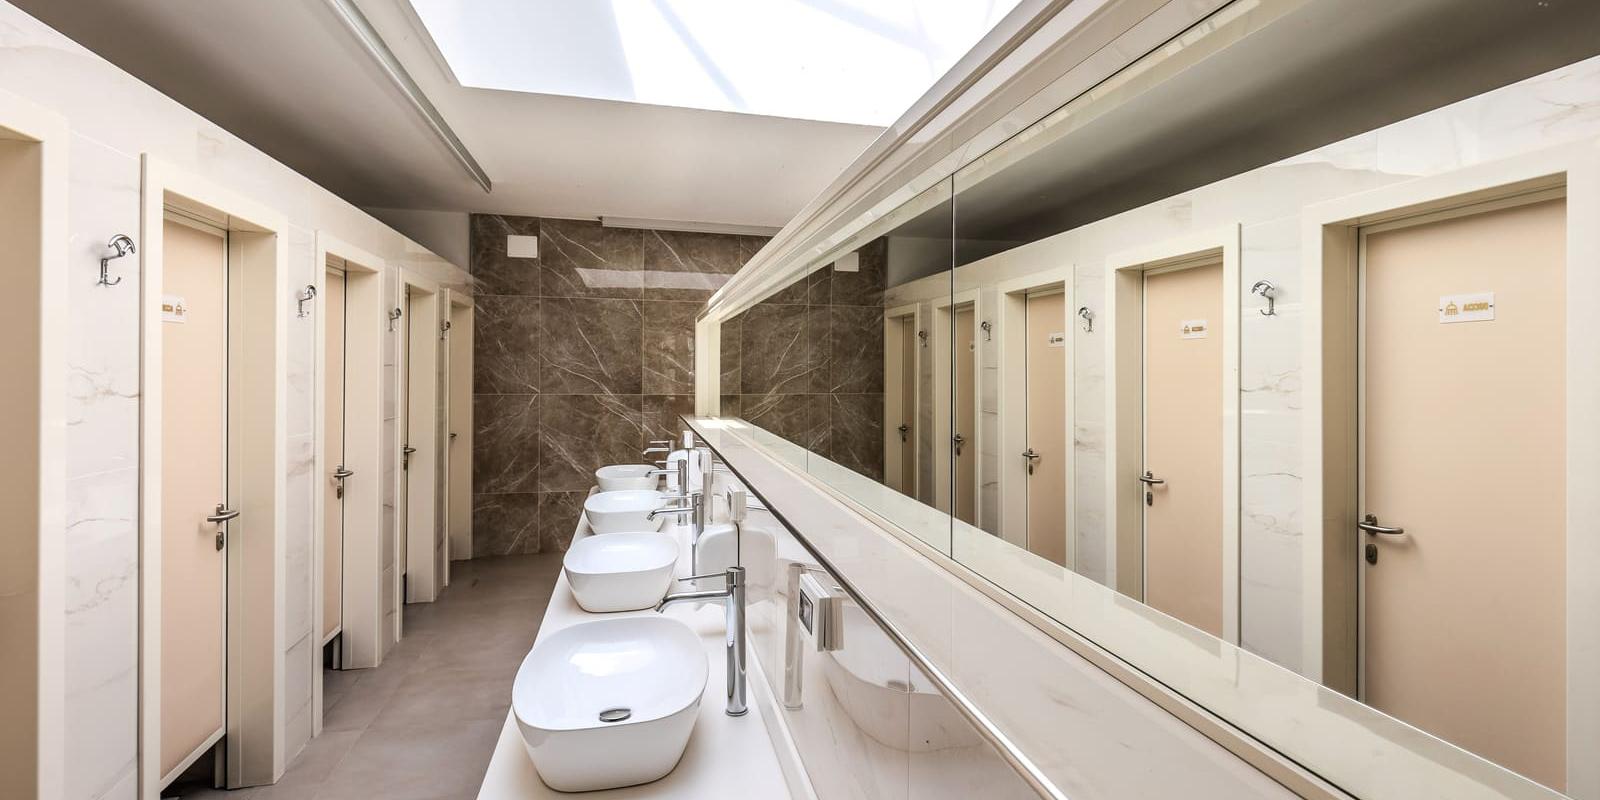 Salle de bain moderne avec lavabos blancs et cabines à portes beiges.